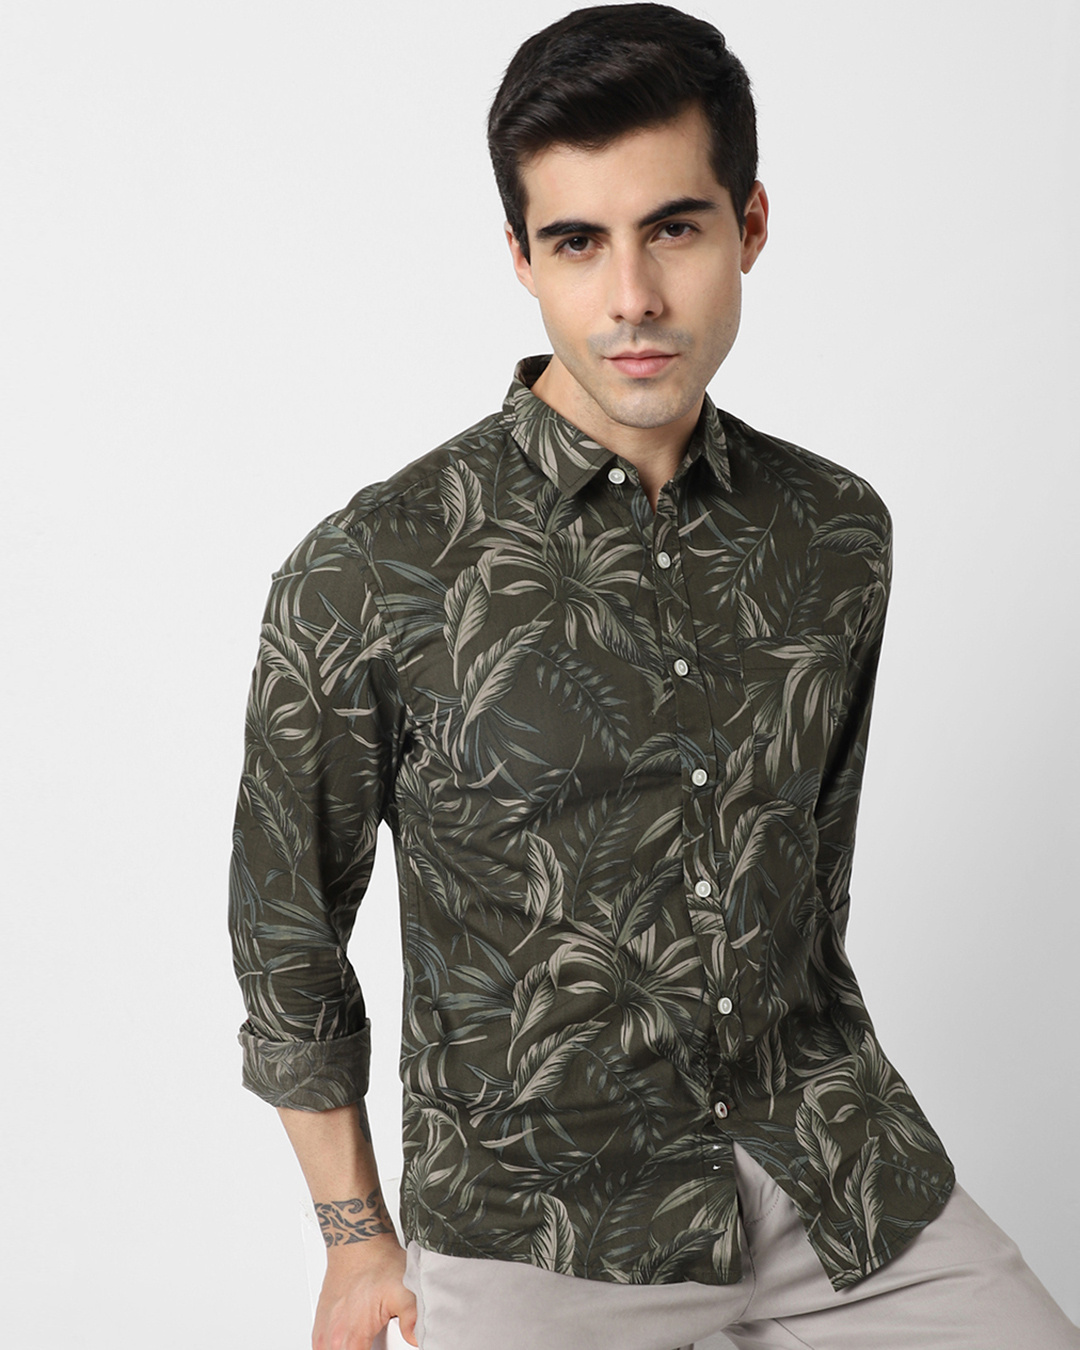 Buy Men's Green Floral Printed Shirt for Men Green Online at Bewakoof